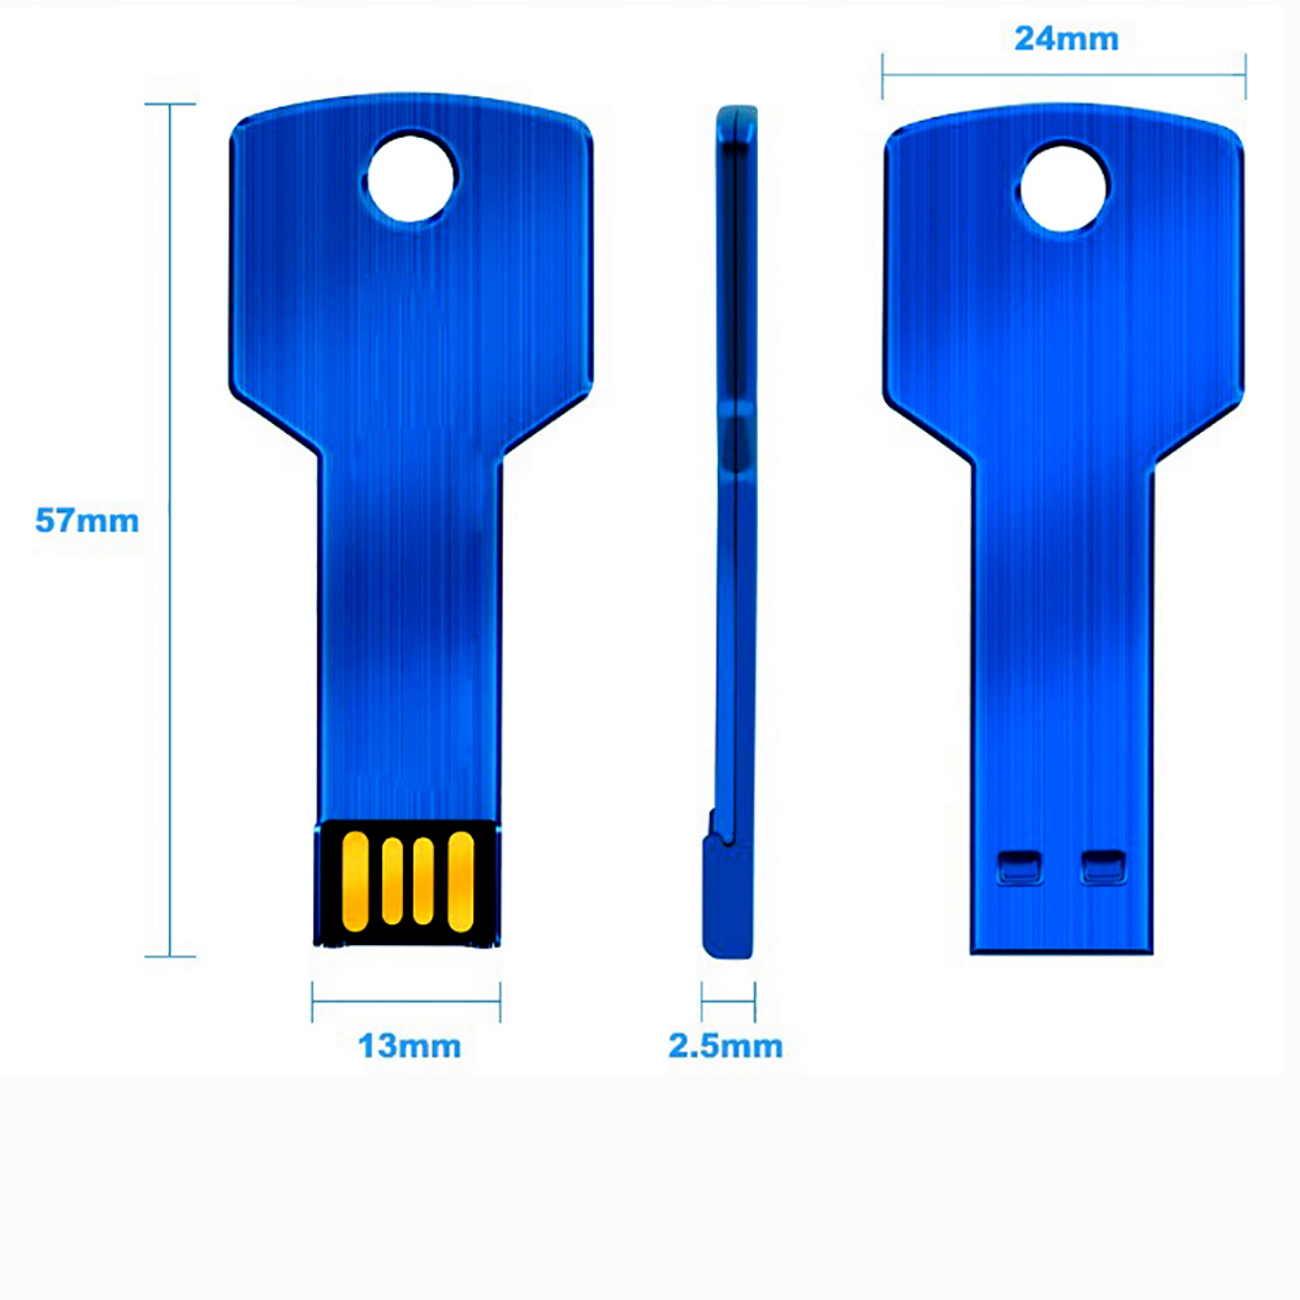 USB GERMANY KeyBlau (Blau, 16 16GB GB) USB-Stick